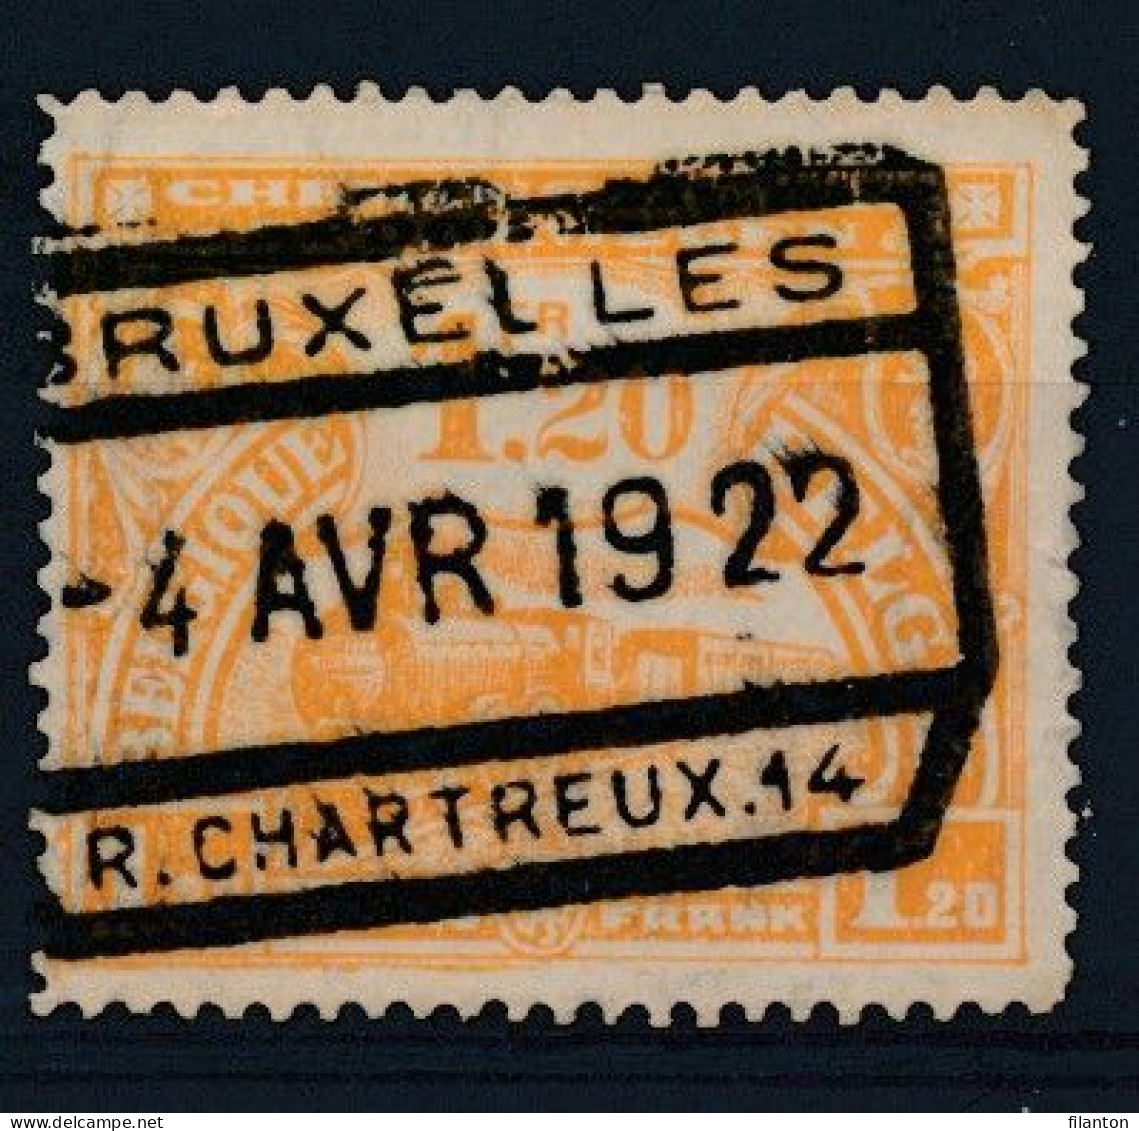 TR  117 -  "BRUXELLES - R.CHARTRTEUX 14" - (ref. 37.493) - Gebraucht